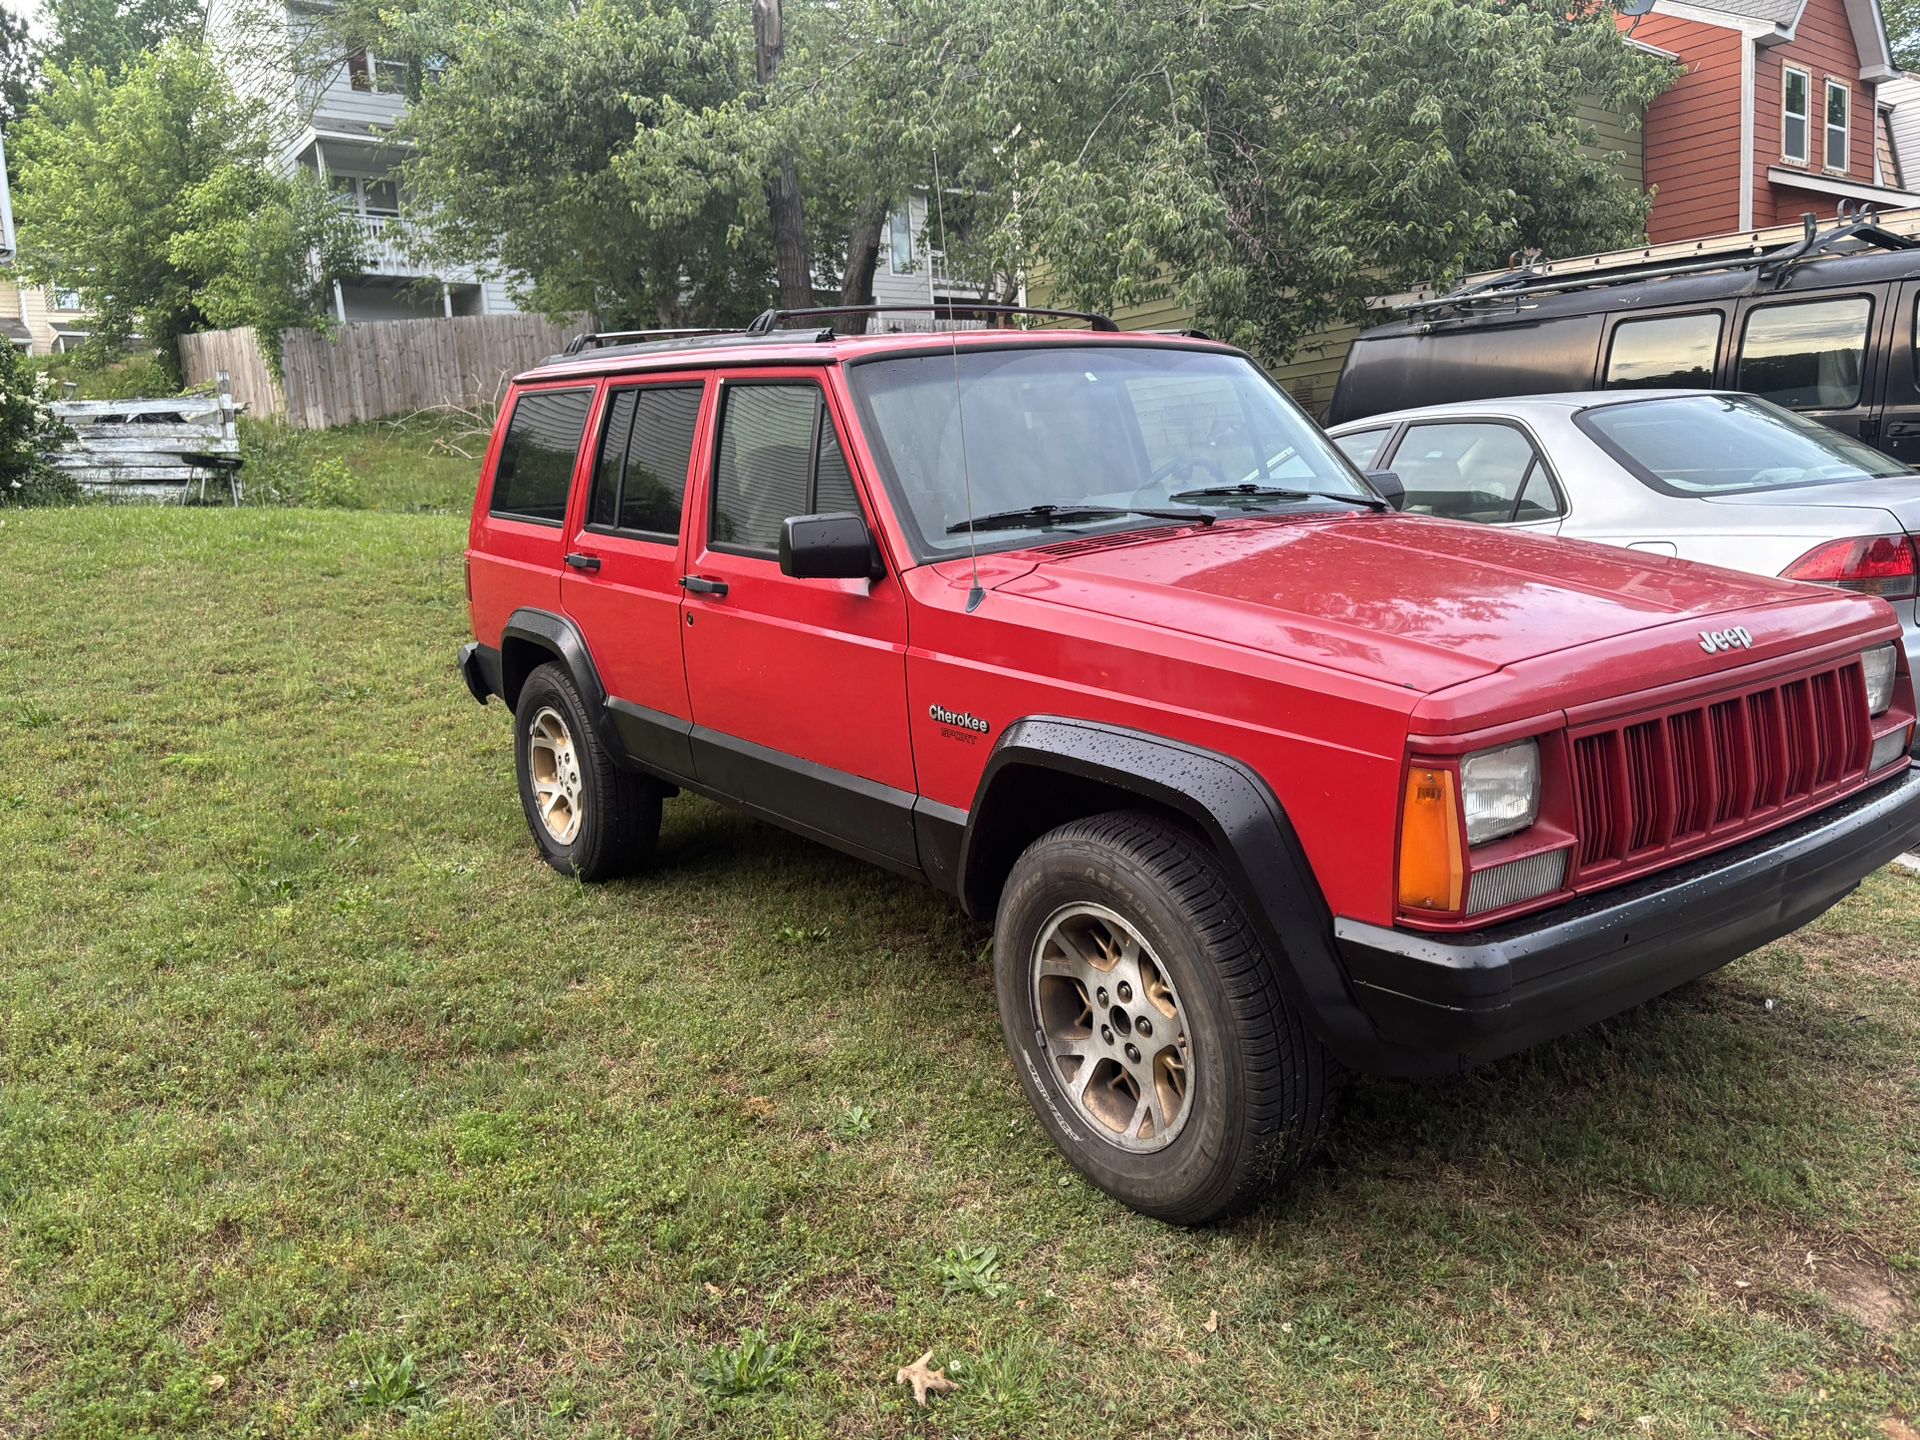 1995 Jeep Cherokee